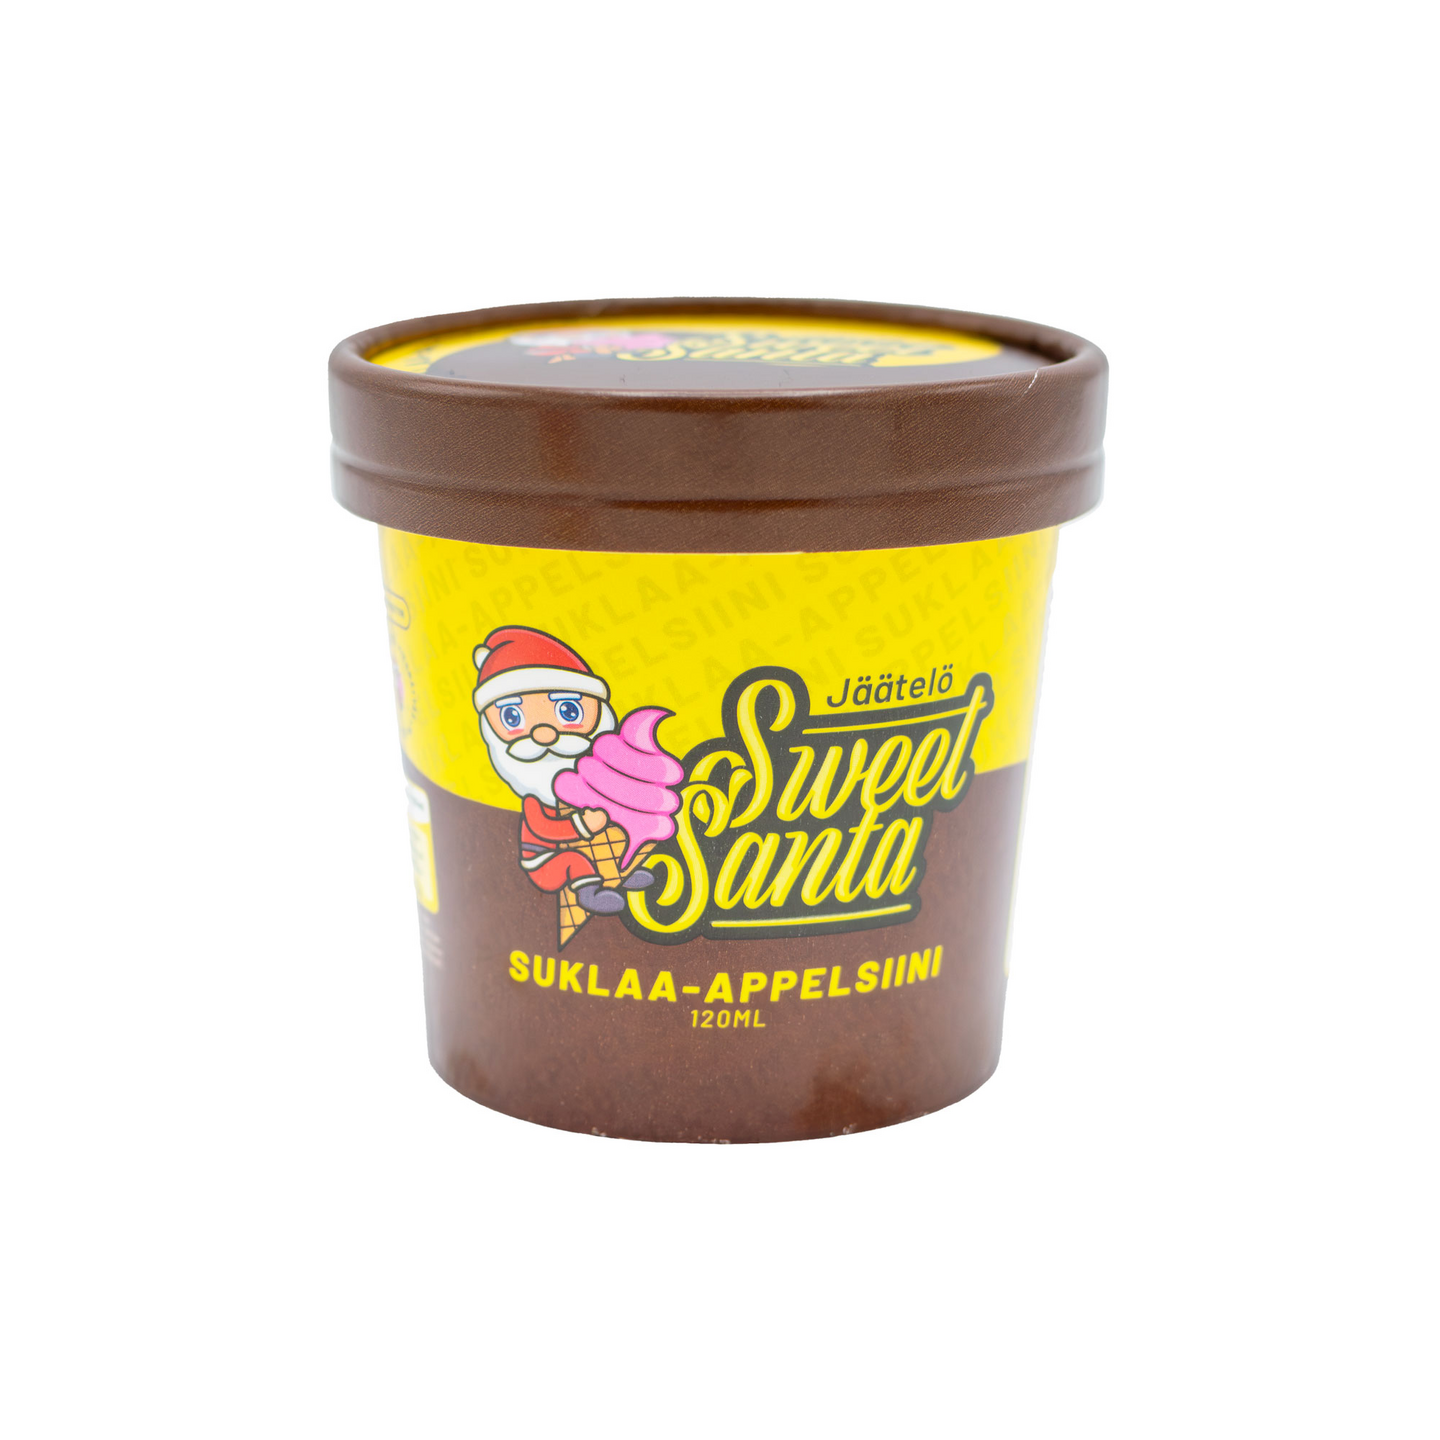 Sweet Santa suklaa-appelsiinijäätelö 120ml laktoositon